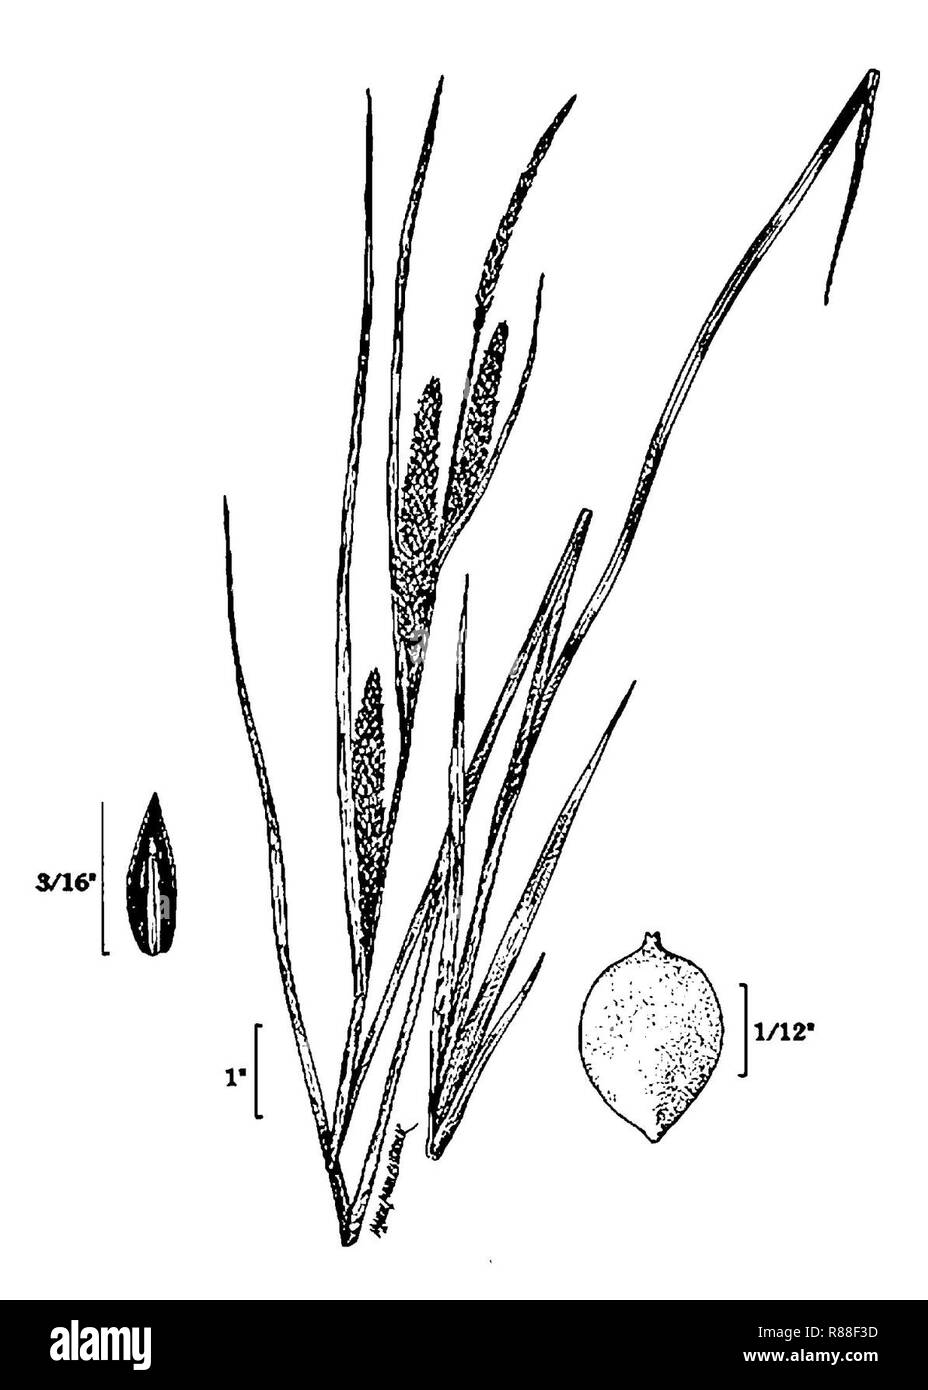 Carex aquatilis caaq 005 pvd. Stock Photo